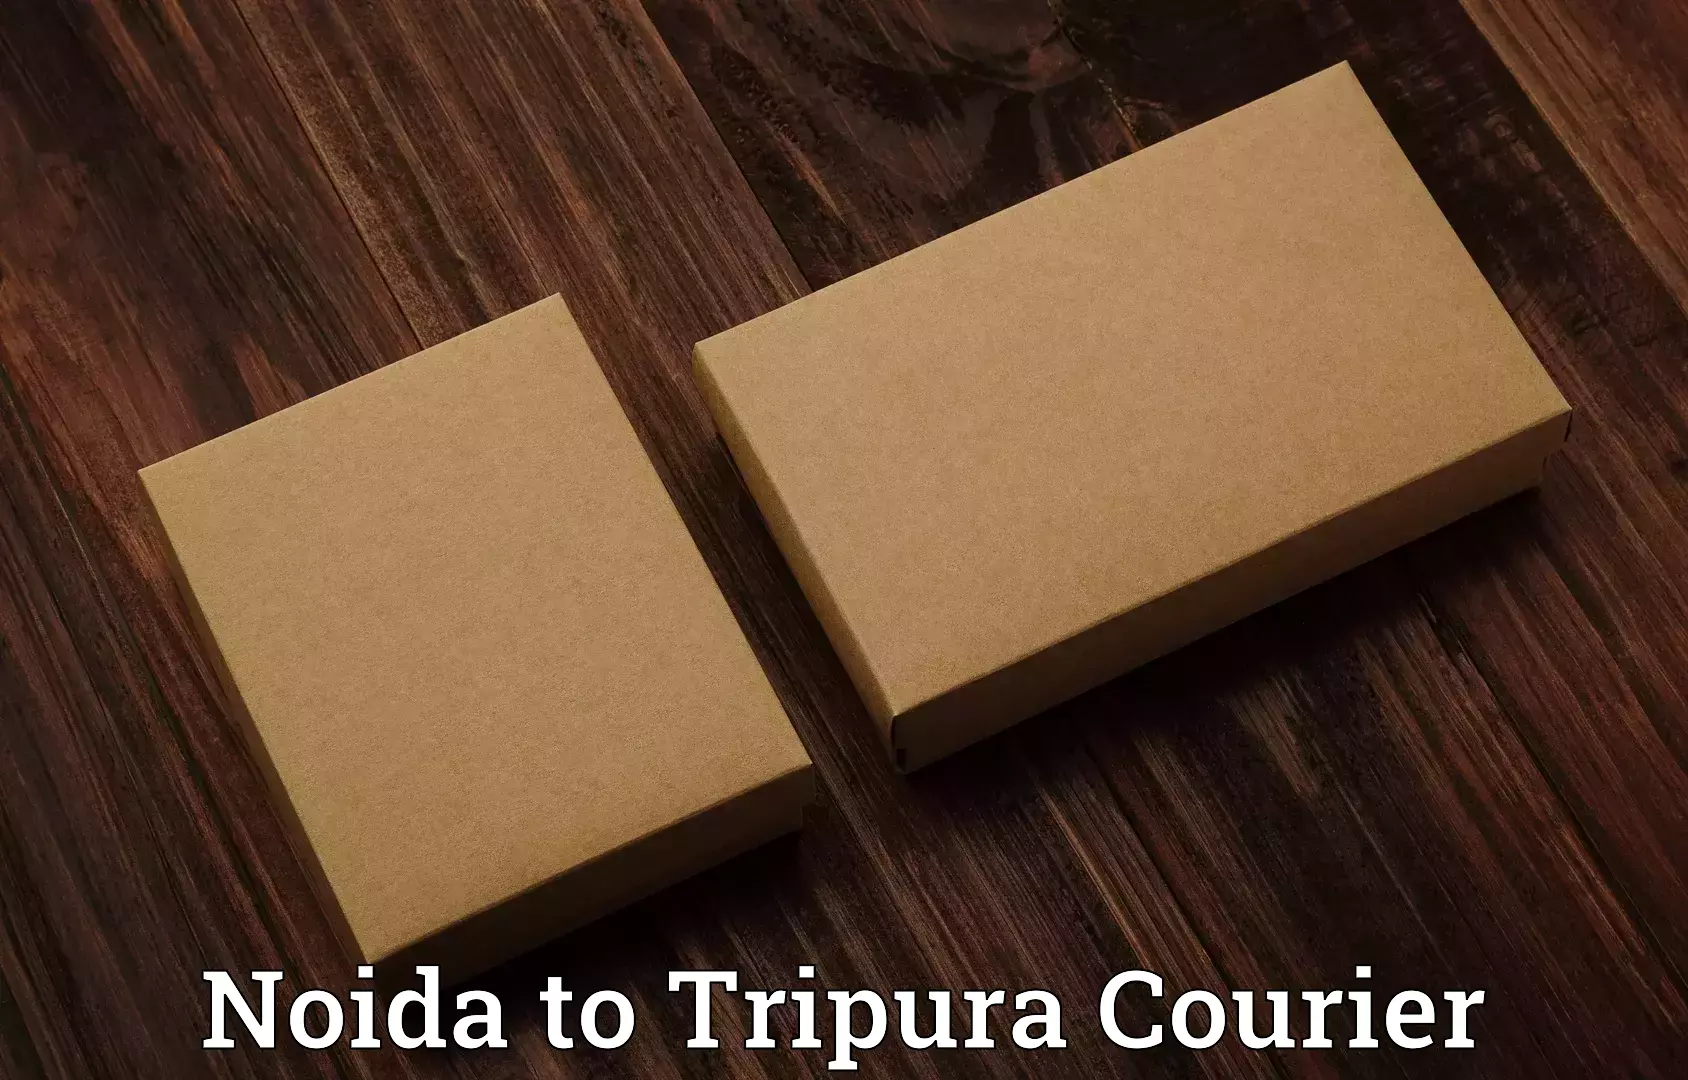 Luggage shipping consultation Noida to Udaipur Tripura